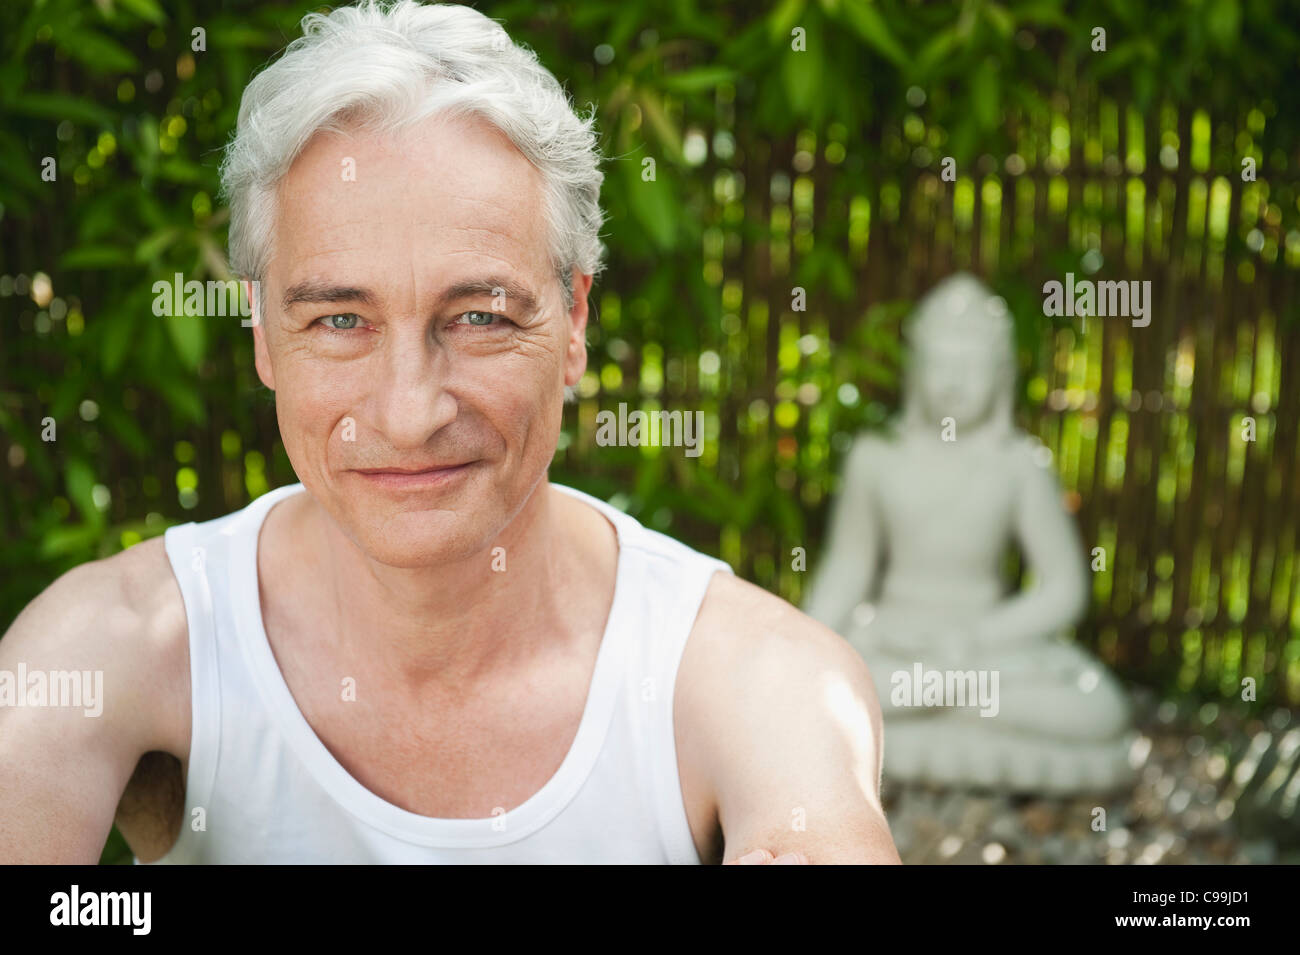 Alemania, Baviera, Madura Hombre sonriendo con estatua de Buda en segundo plano. Foto de stock